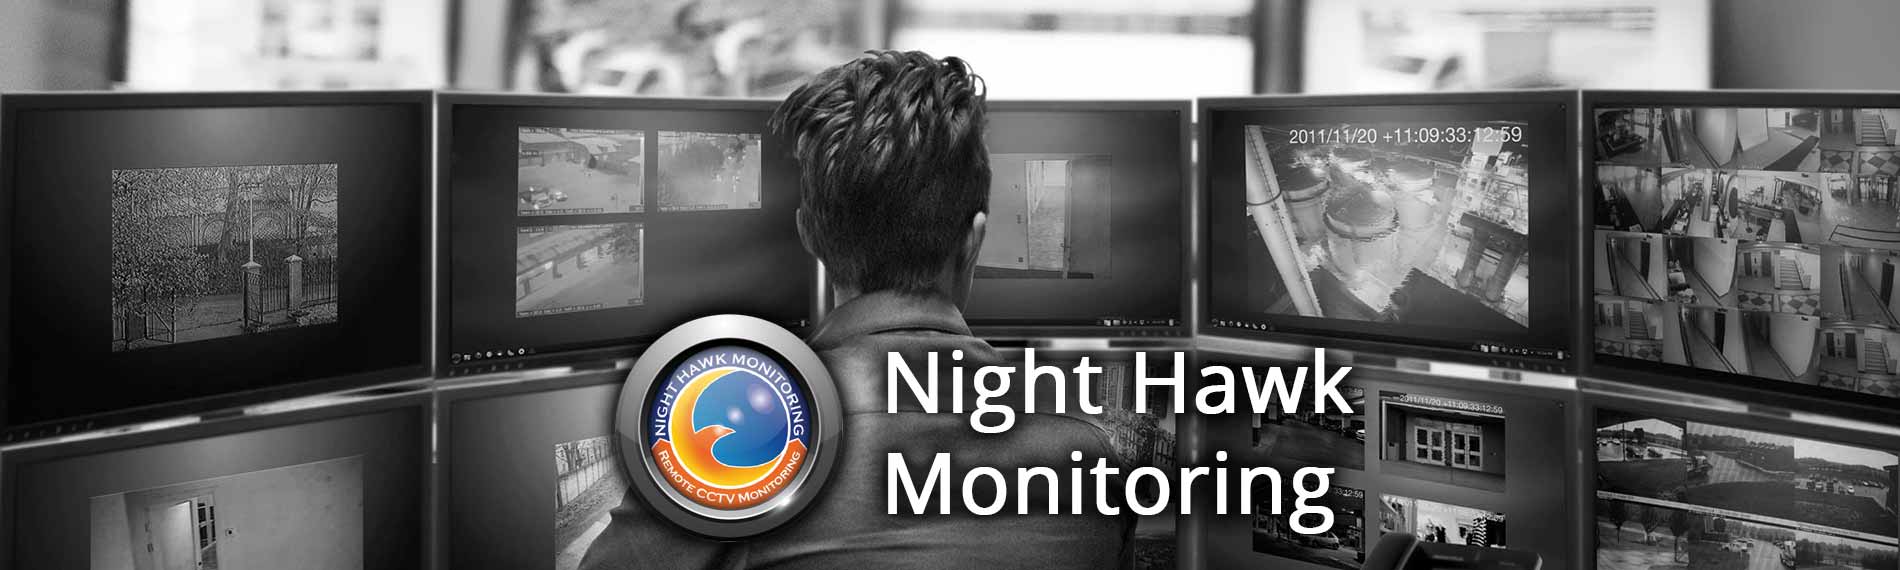 Remote Video Surveillance Atlantic City - Live Security Cameras Monitoring Atlantic City NJ